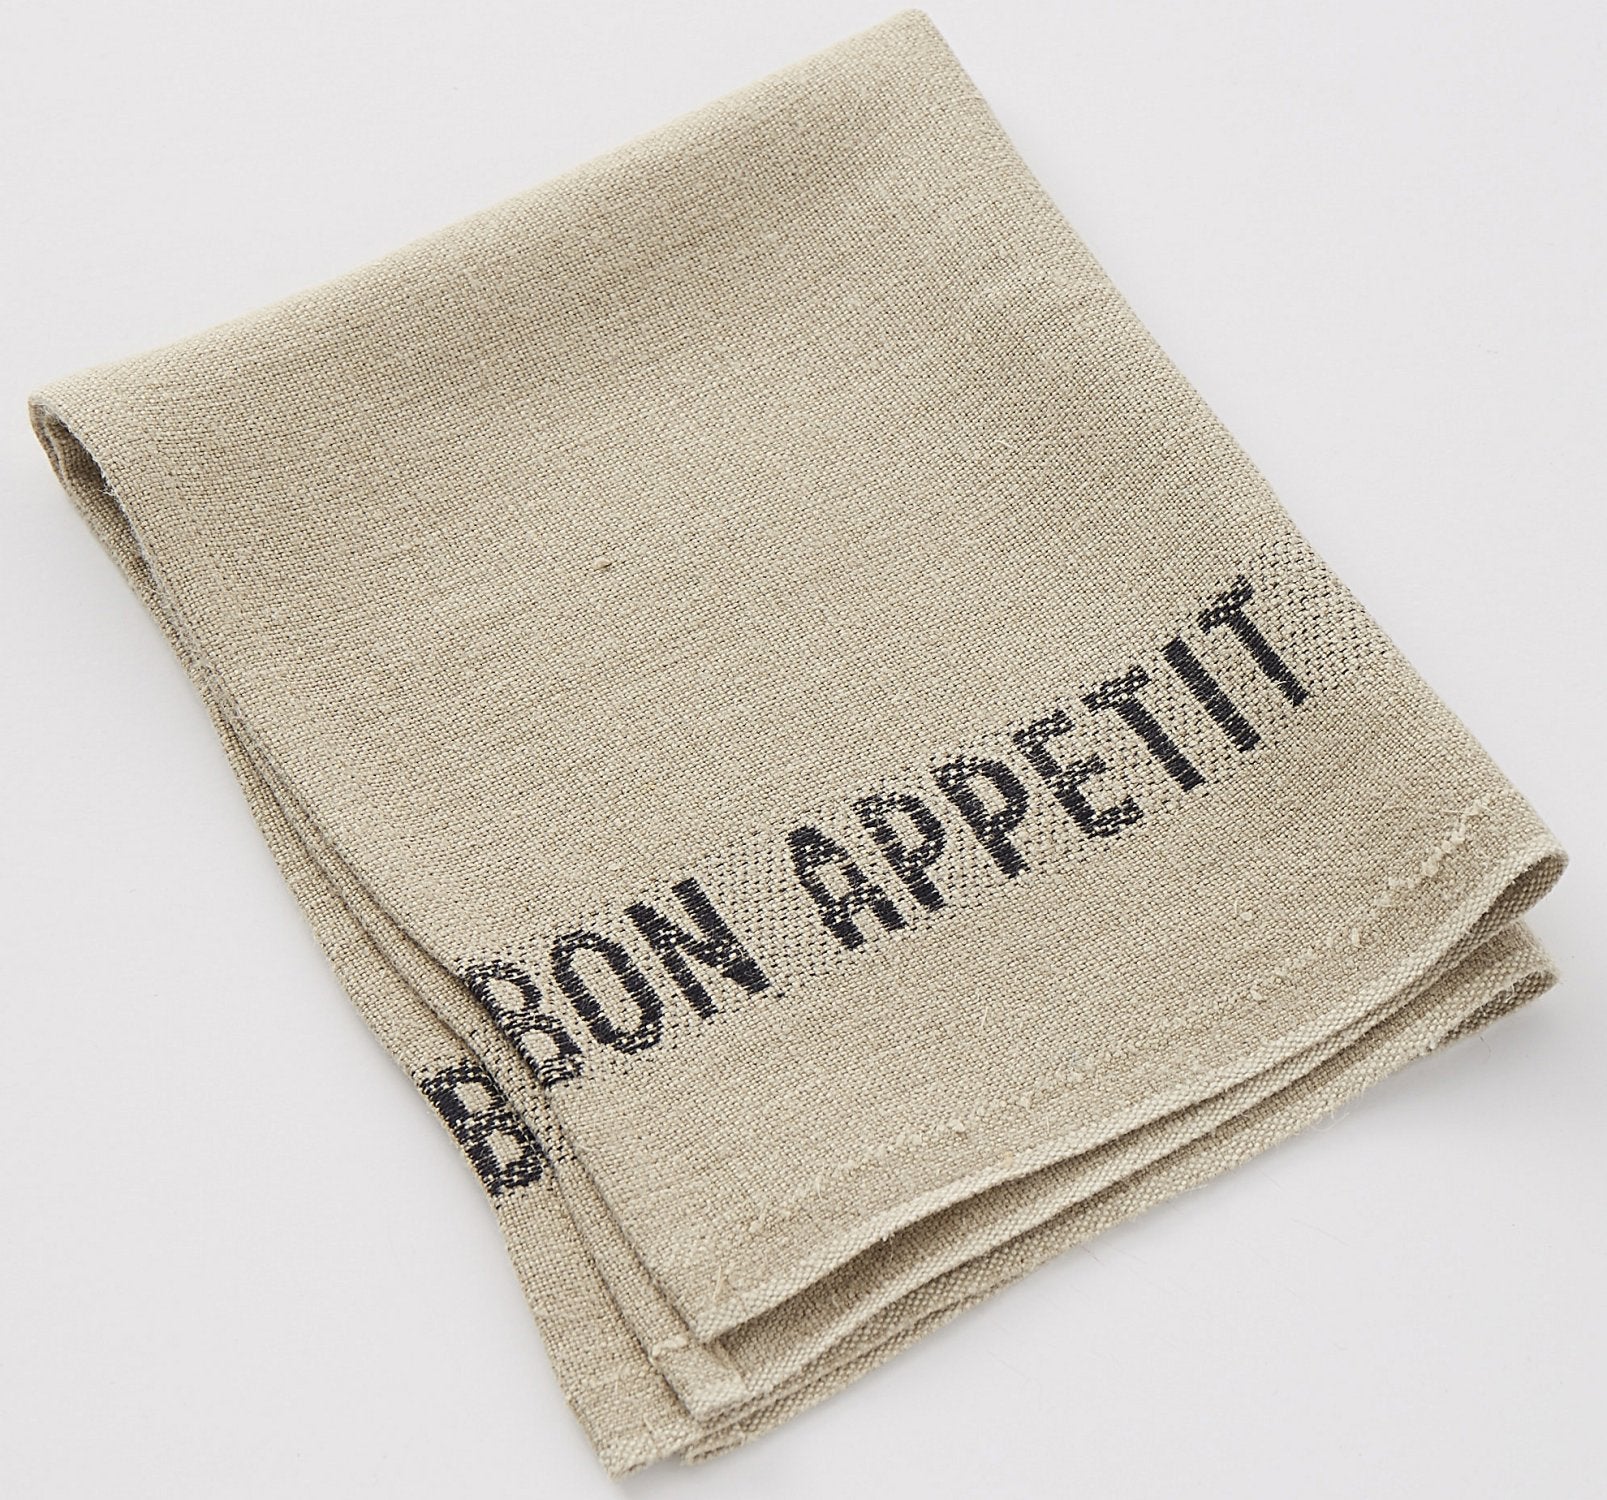 Charvet Editions "Bon Appetit" (Black), Natural woven linen table runner. Made in France.